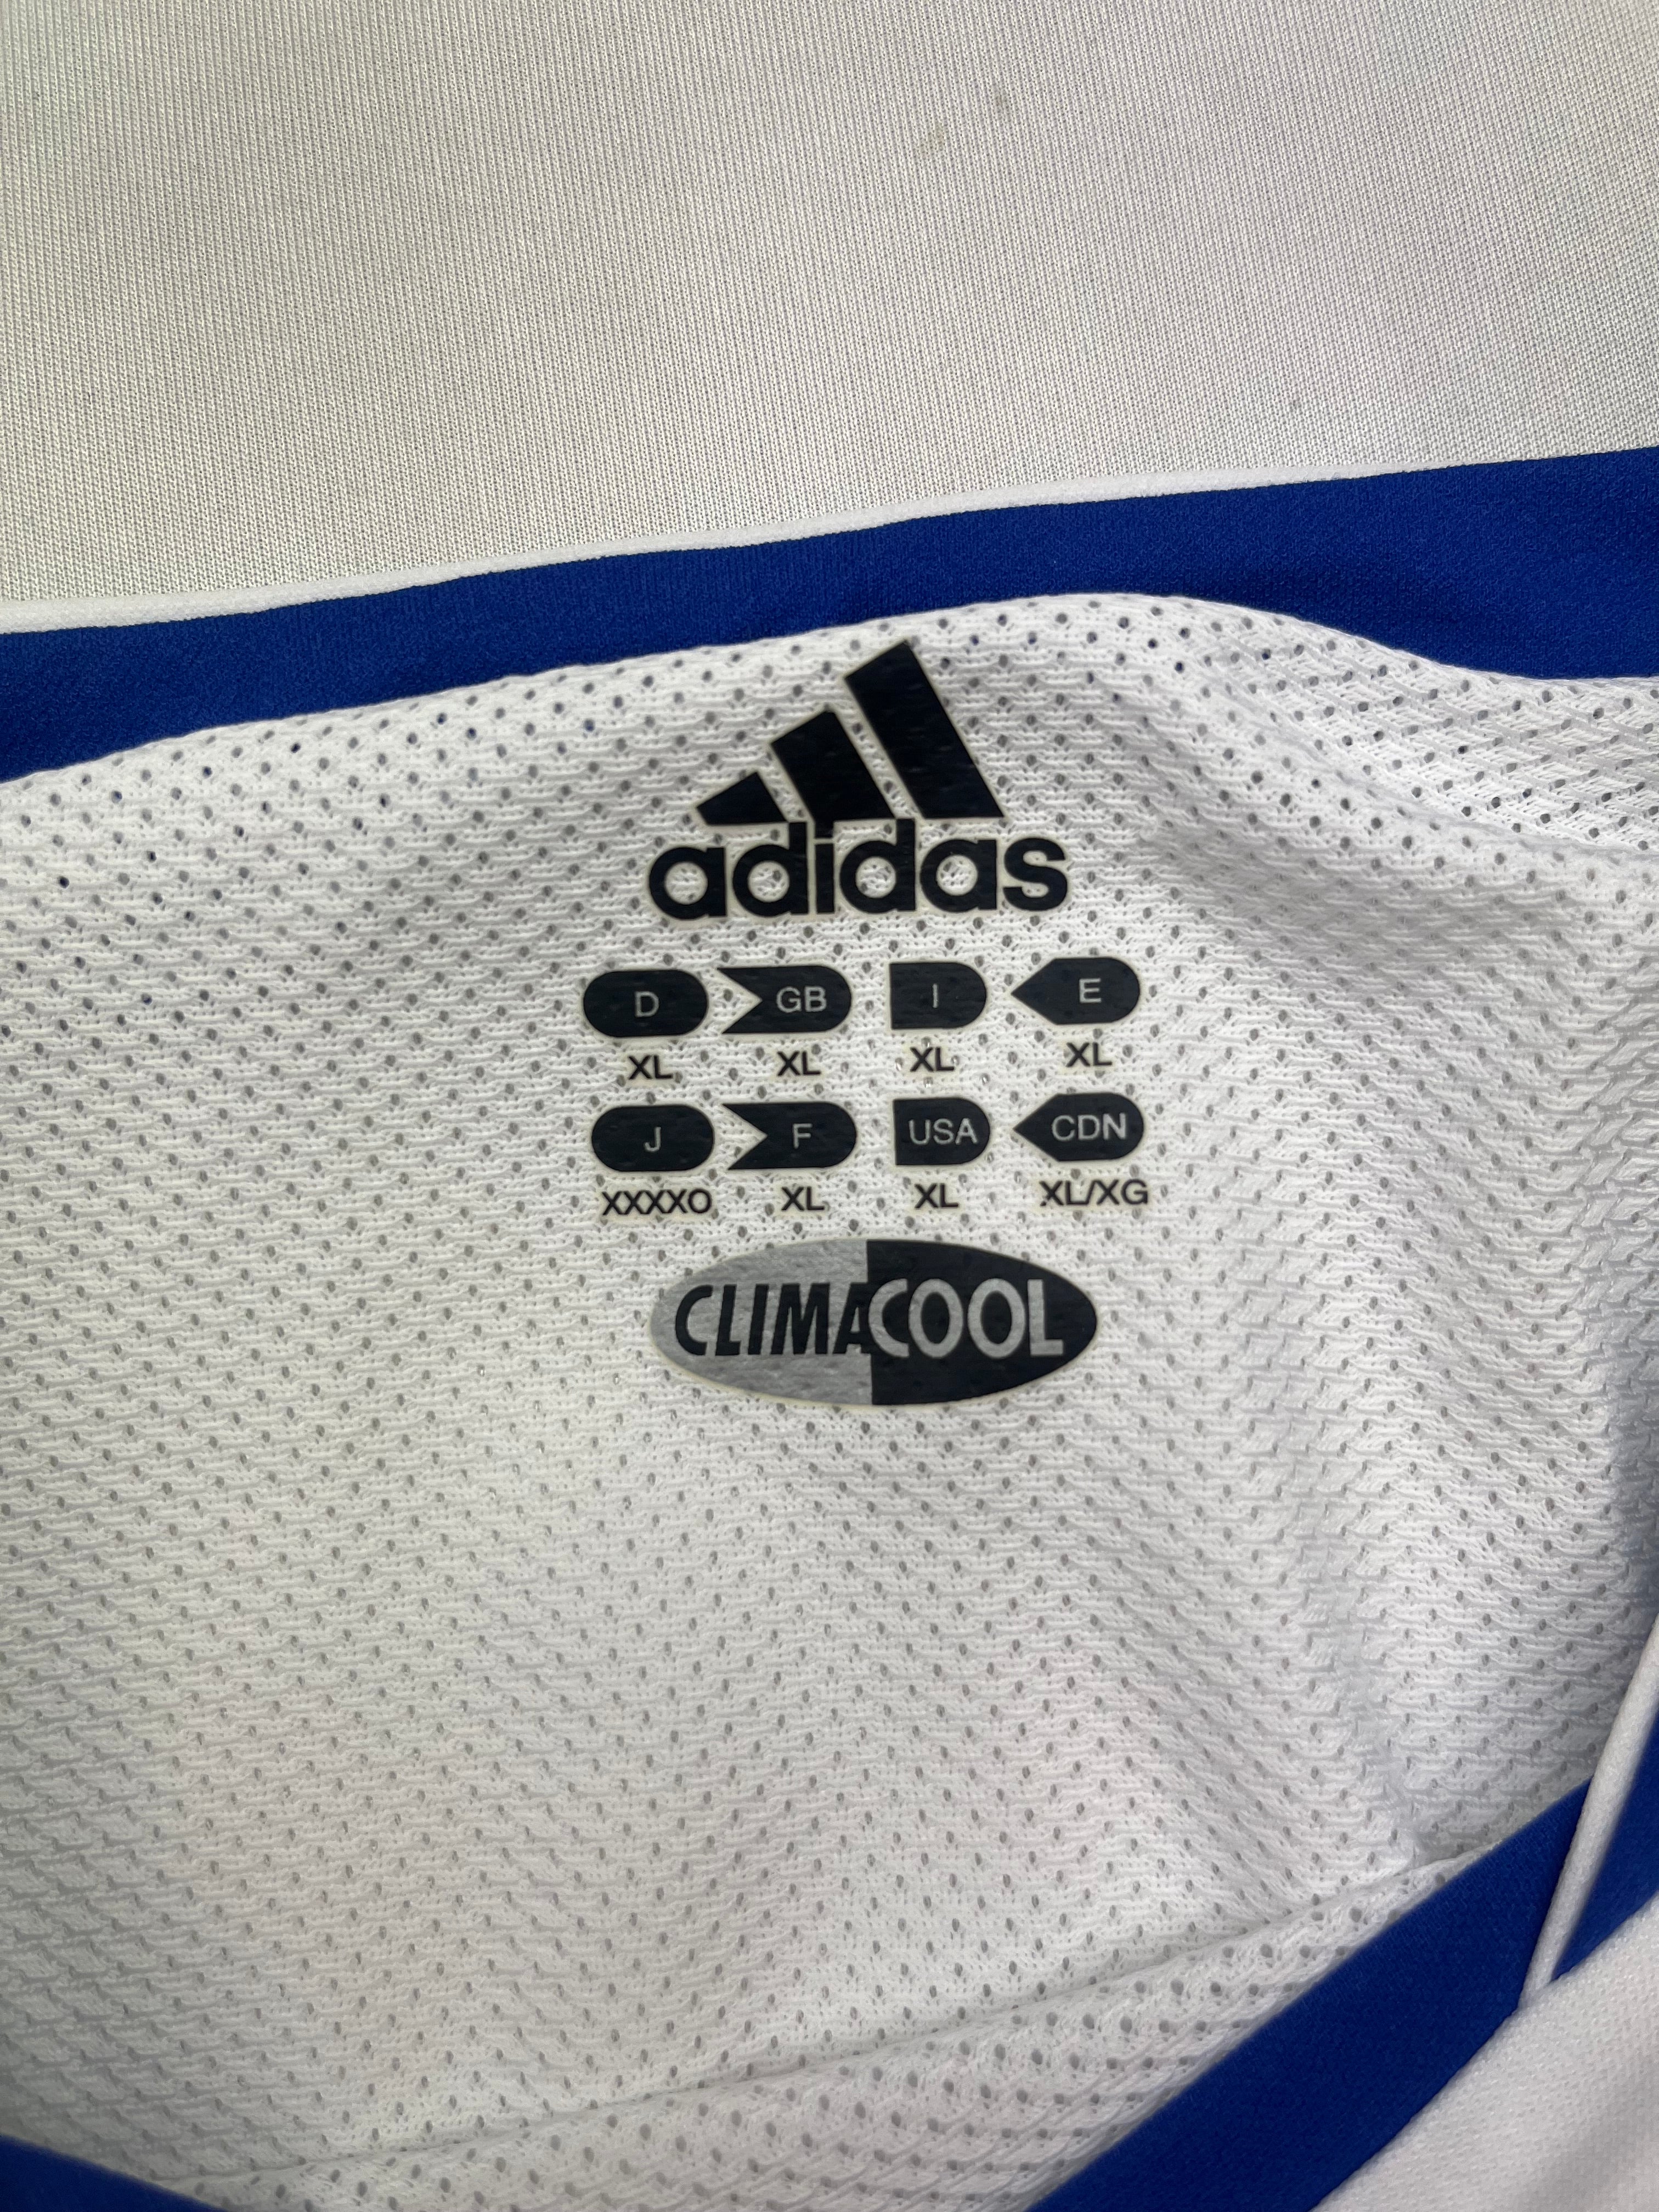 2004/05 Schalke *Player Spec* Third Shirt (XL) 8/10